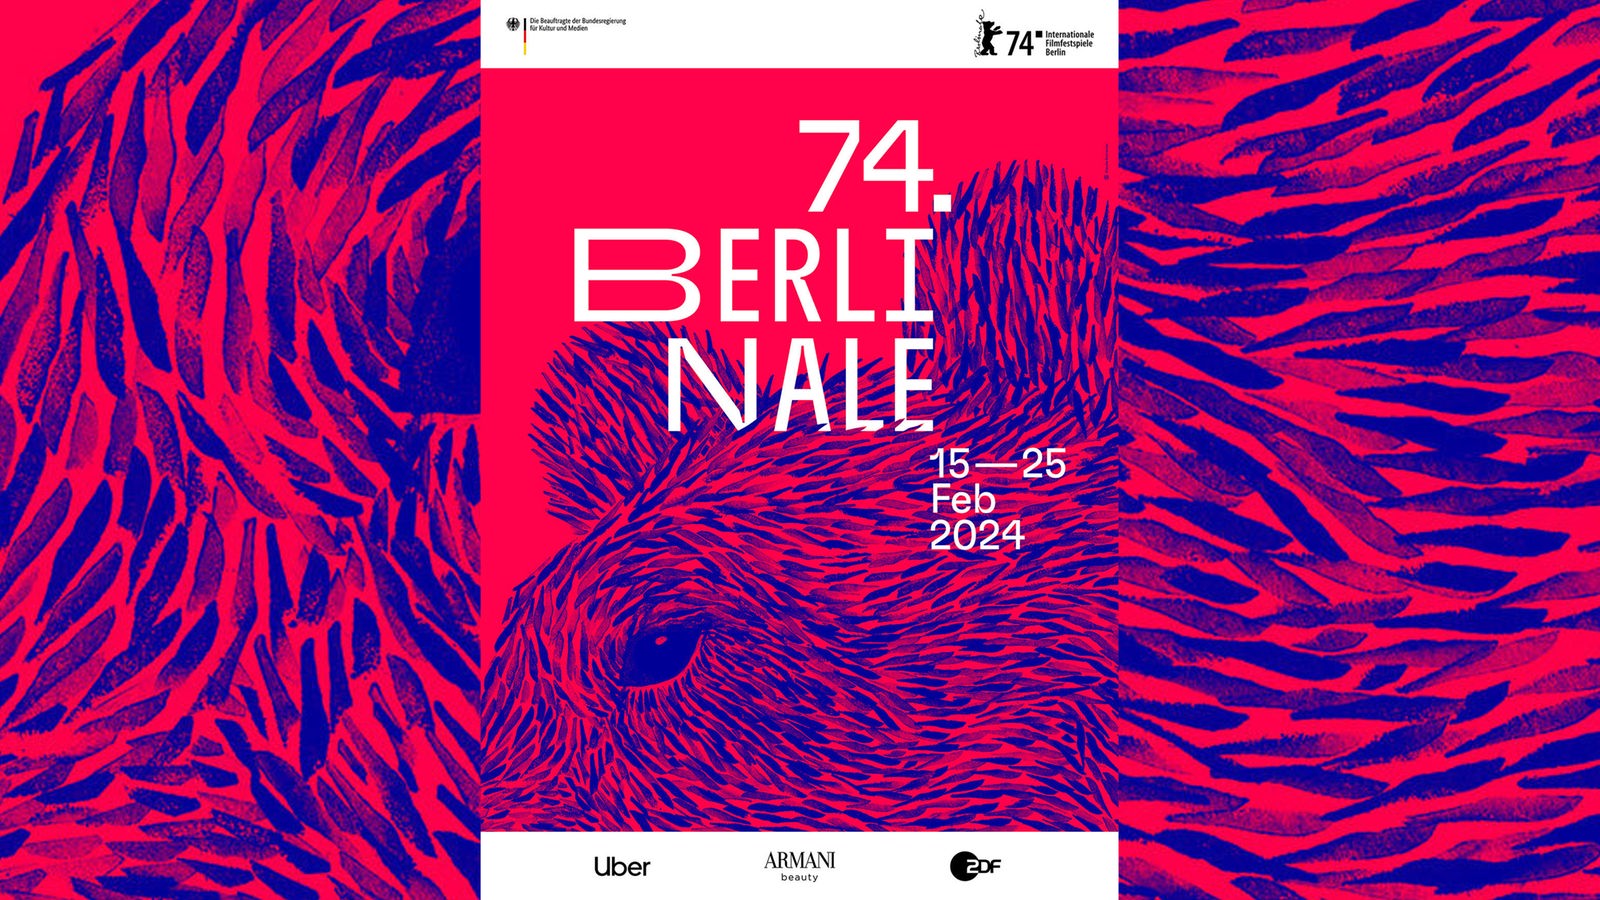 Berlinale 2024 Plakatmotiv 100~ V Gseagaleriexl 